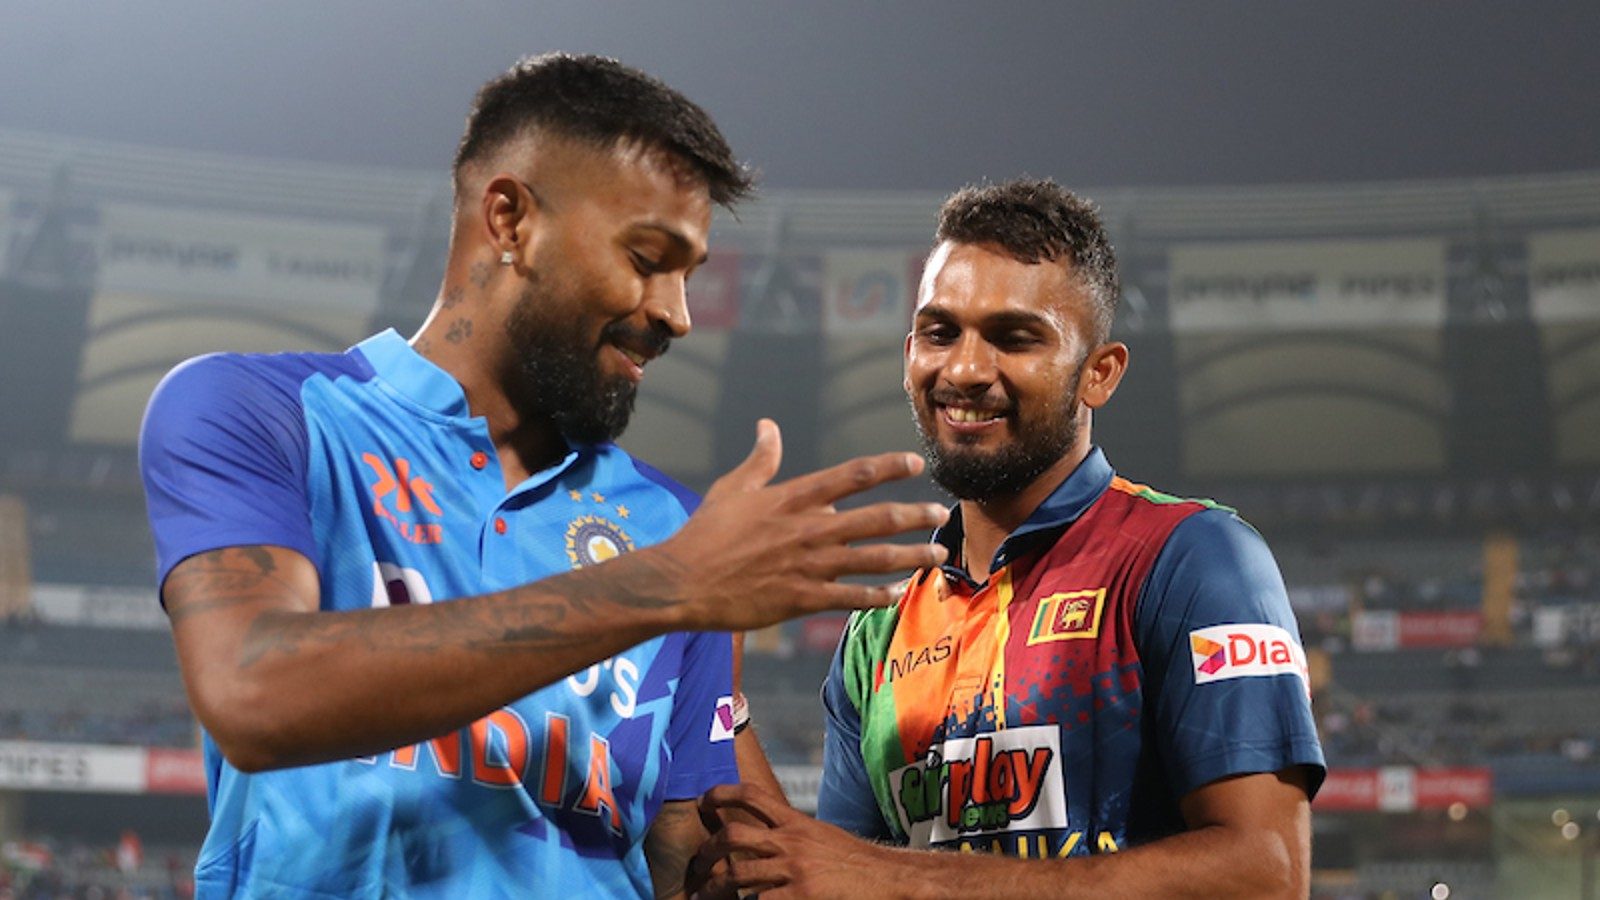 IND vs SL, 2nd T20I: भारत ने श्रीलंका के खिलाफ टॉस जीता और गेंदबाजी चुनी